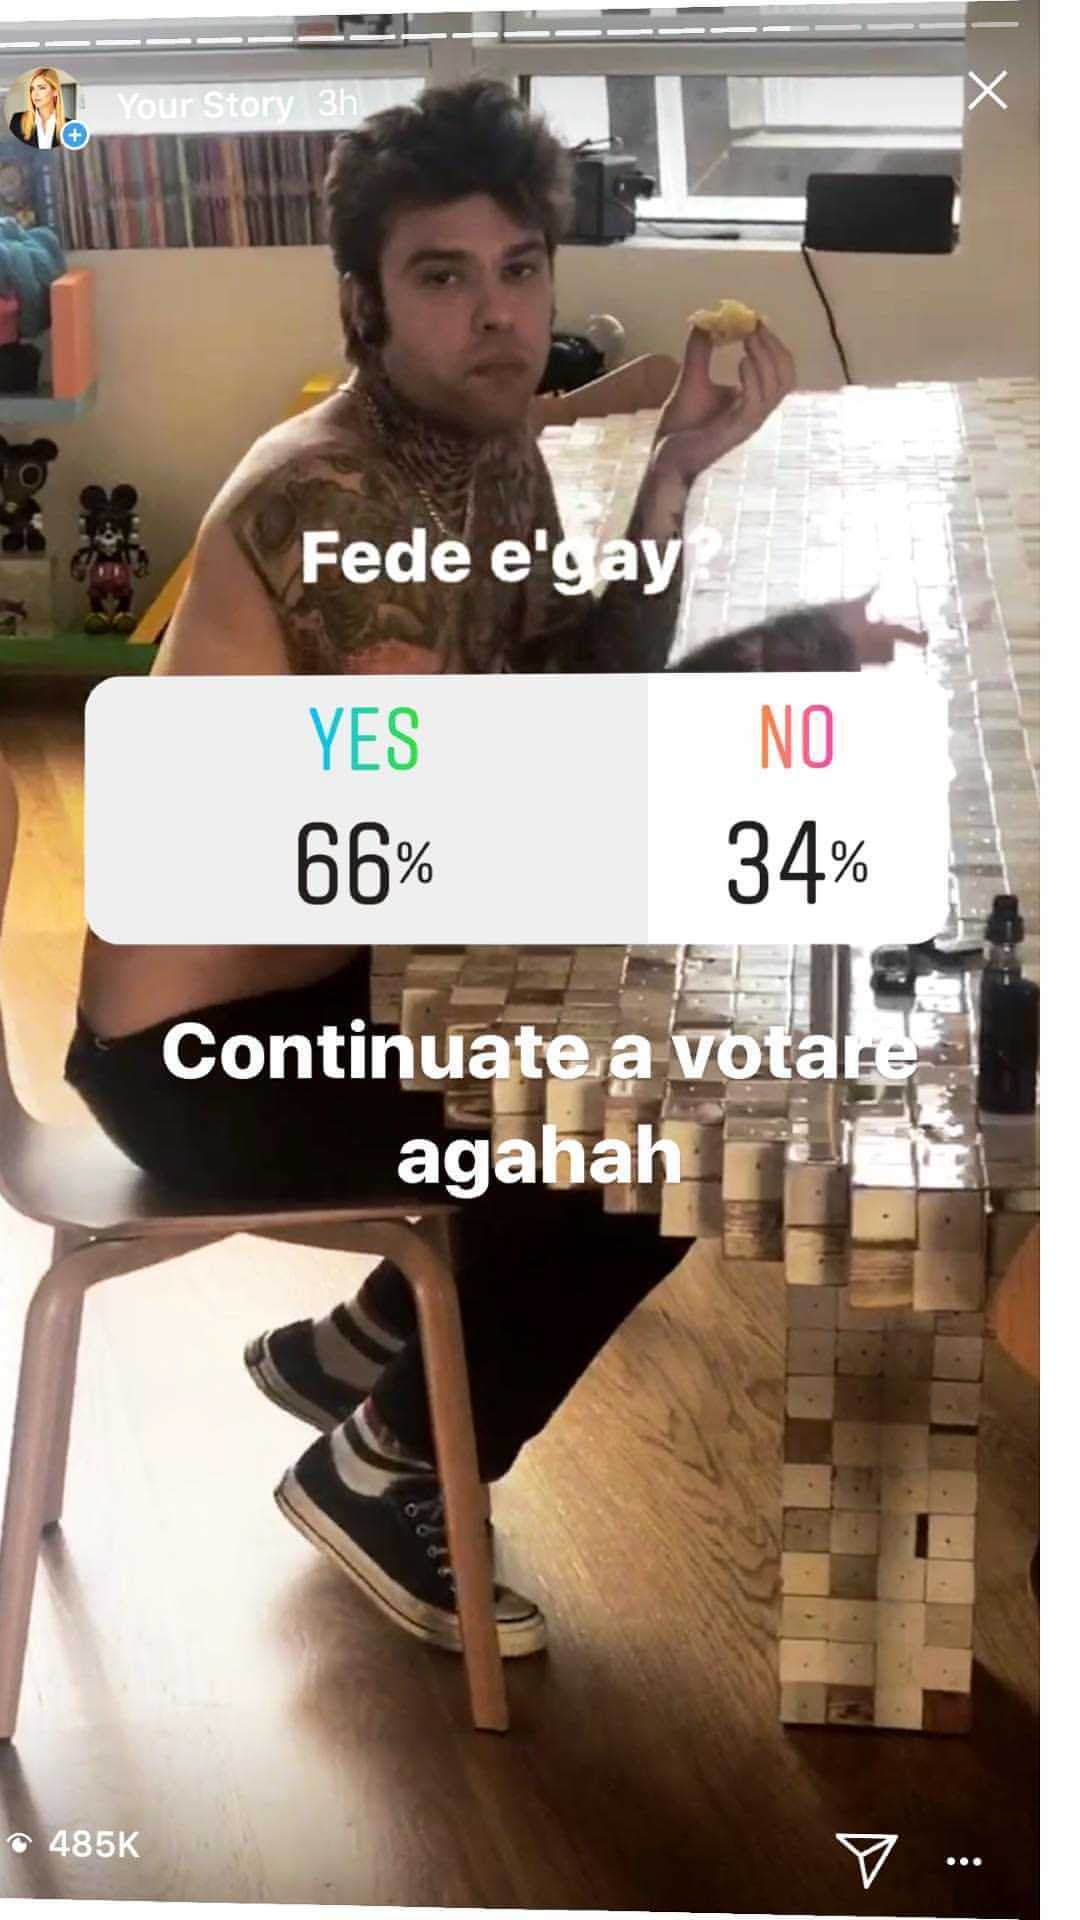 Chiara Ferragni lancia il sondaggio su Instagram: "Fedez è gay?" - fedez gay - Gay.it